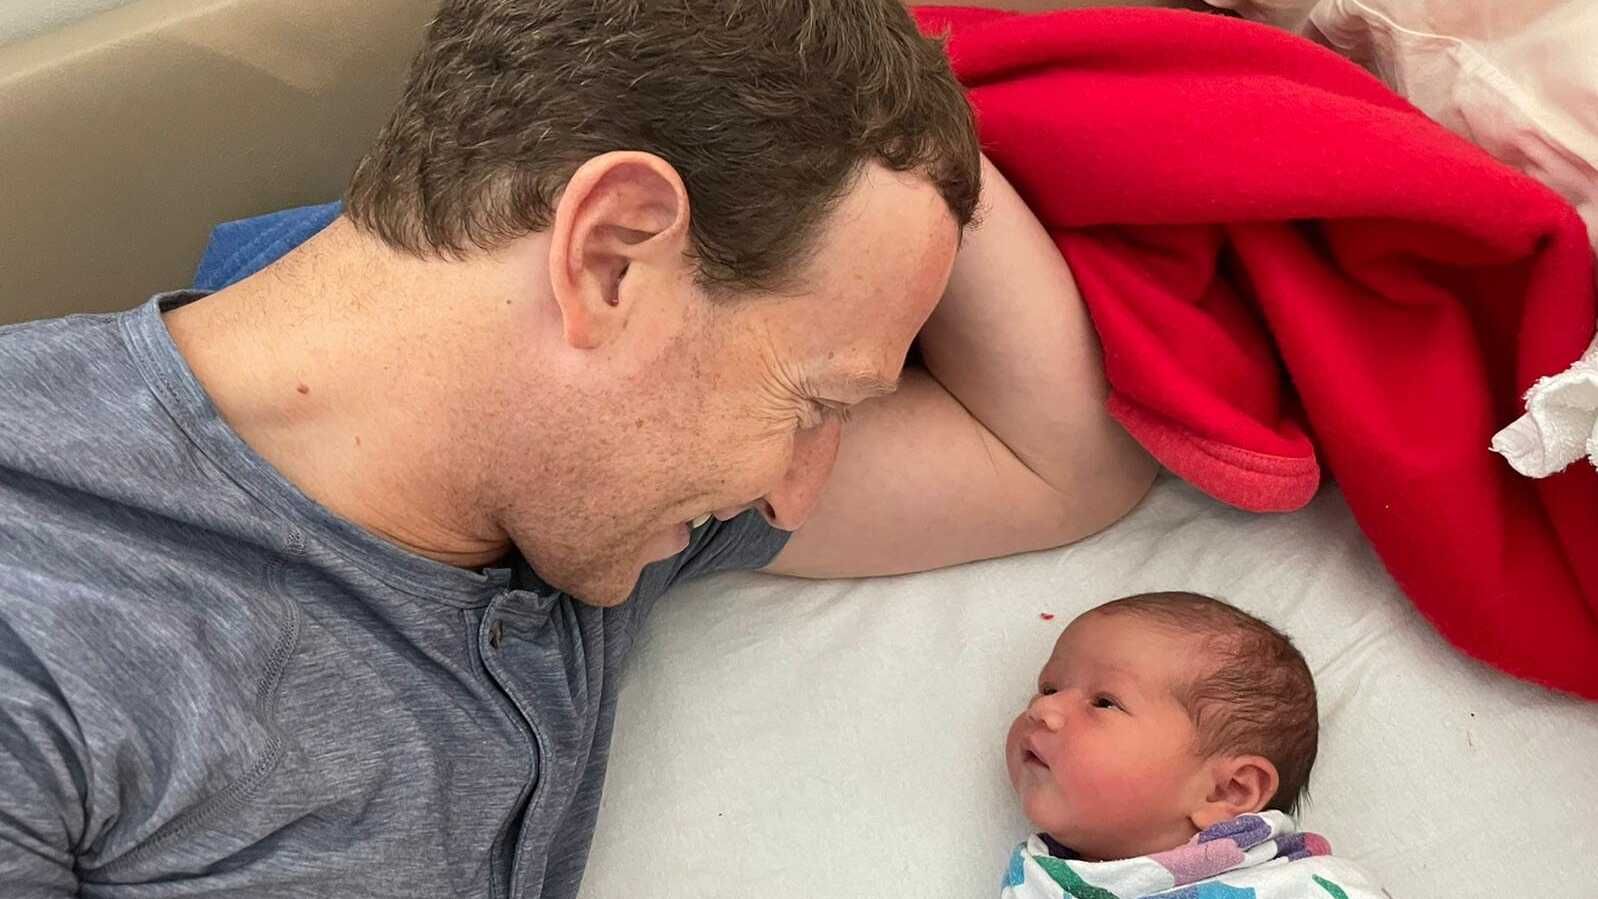 Марк Цукерберг стал отцом в третий раз - фото, пол, имя ребенка